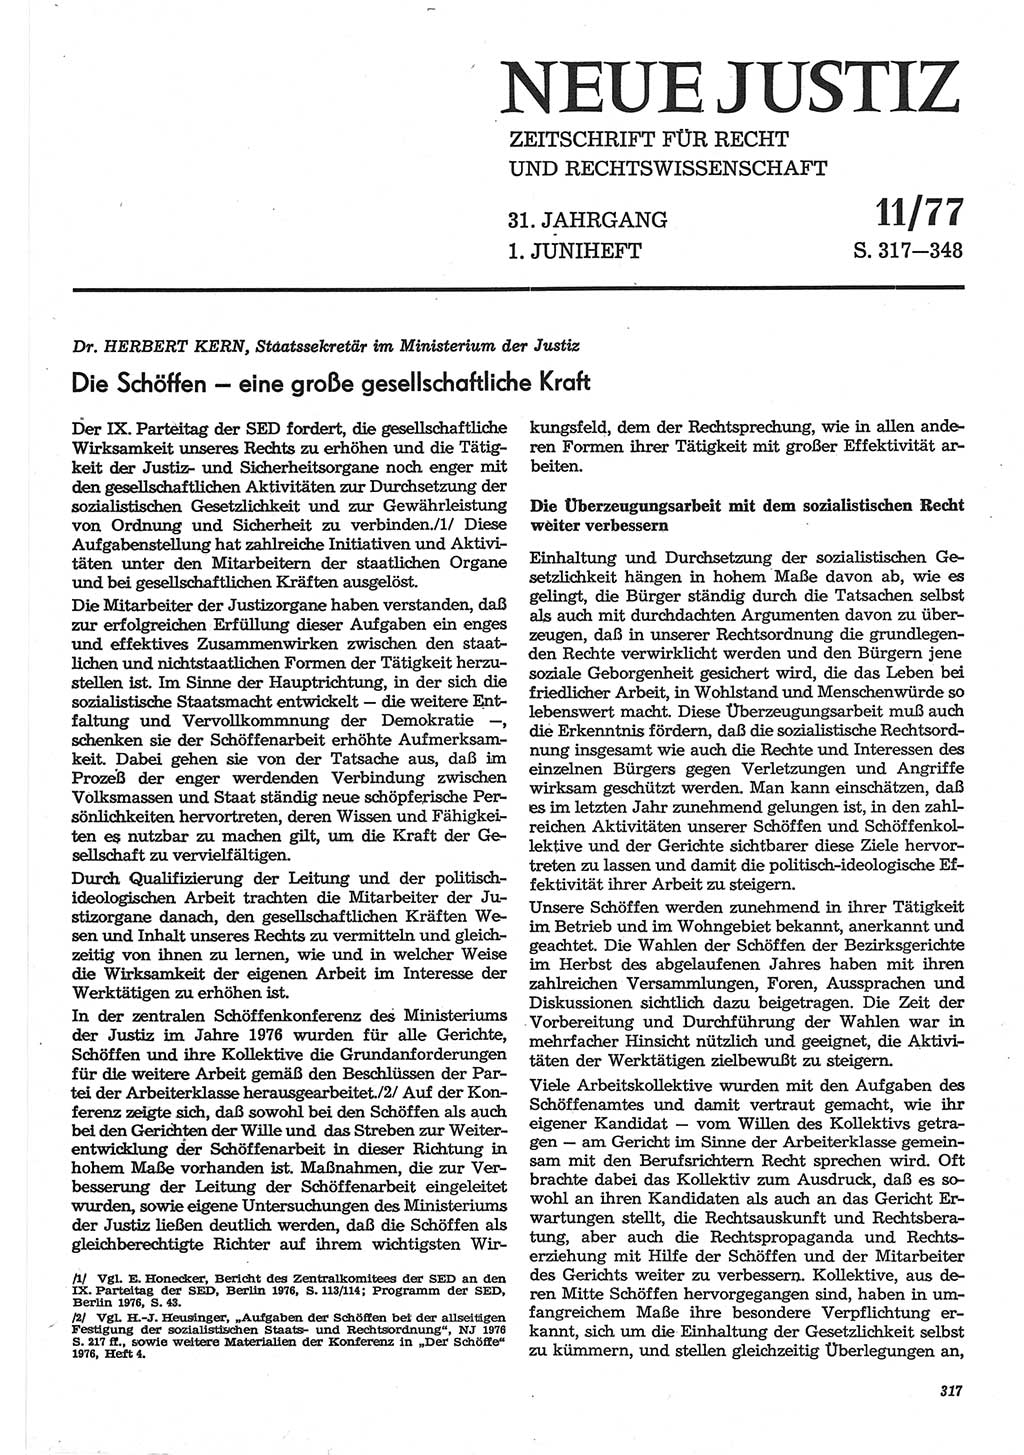 Neue Justiz (NJ), Zeitschrift für Recht und Rechtswissenschaft-Zeitschrift, sozialistisches Recht und Gesetzlichkeit, 31. Jahrgang 1977, Seite 317 (NJ DDR 1977, S. 317)